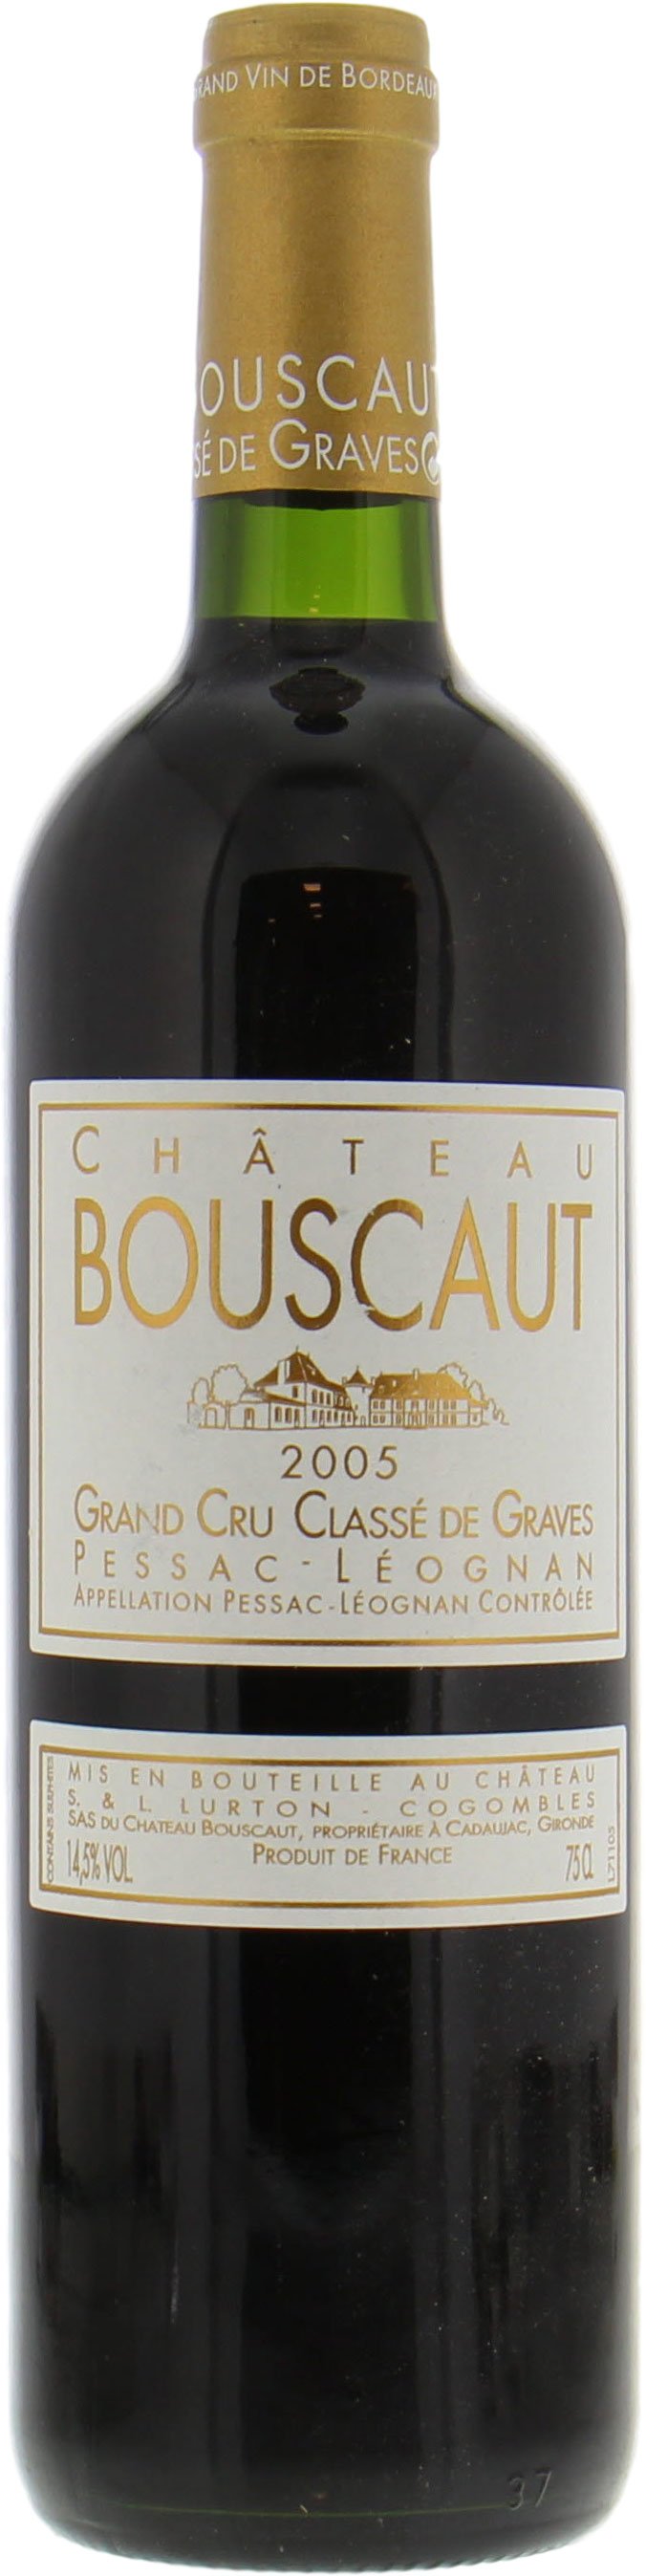 Chateau Bouscaut - Chateau Bouscaut 2005 Perfect